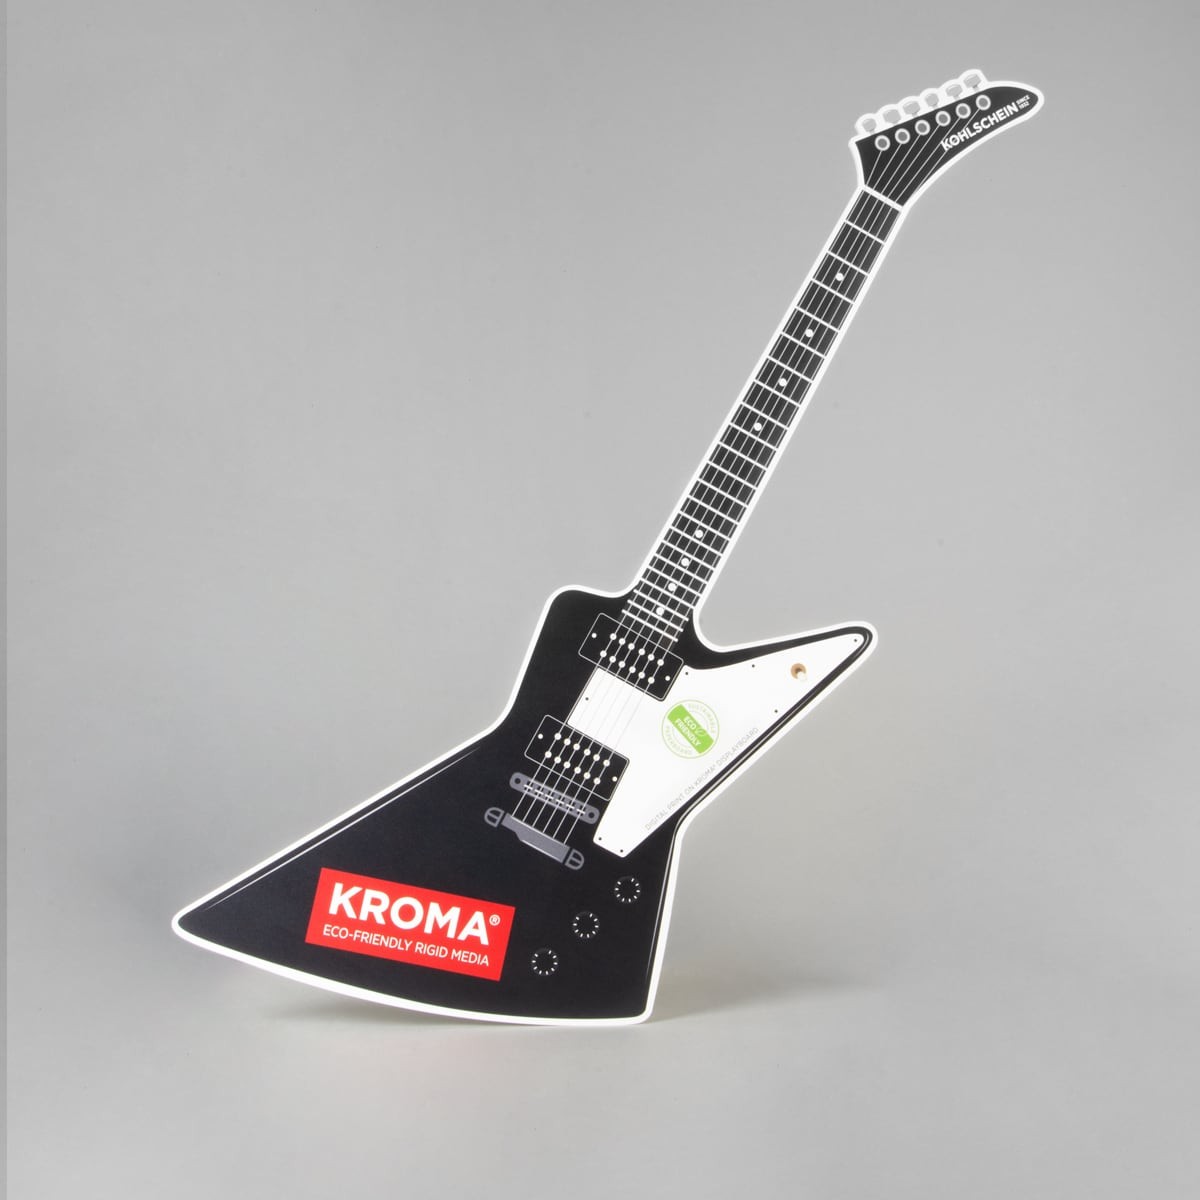 Digital printed guitar made of KROMA Displayboard